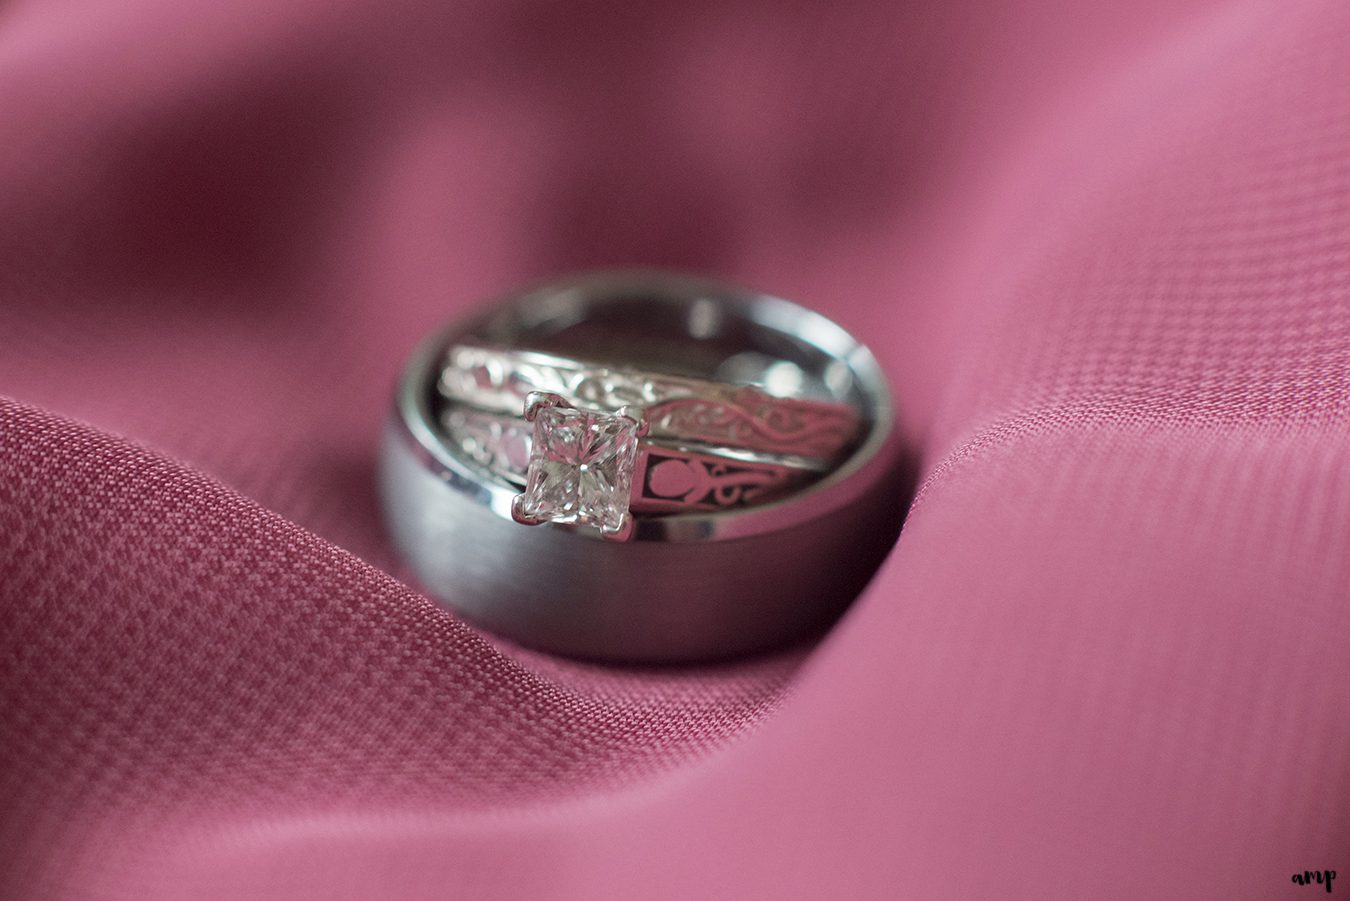 Wedding ring detail shot on magenta bridesmaids dress